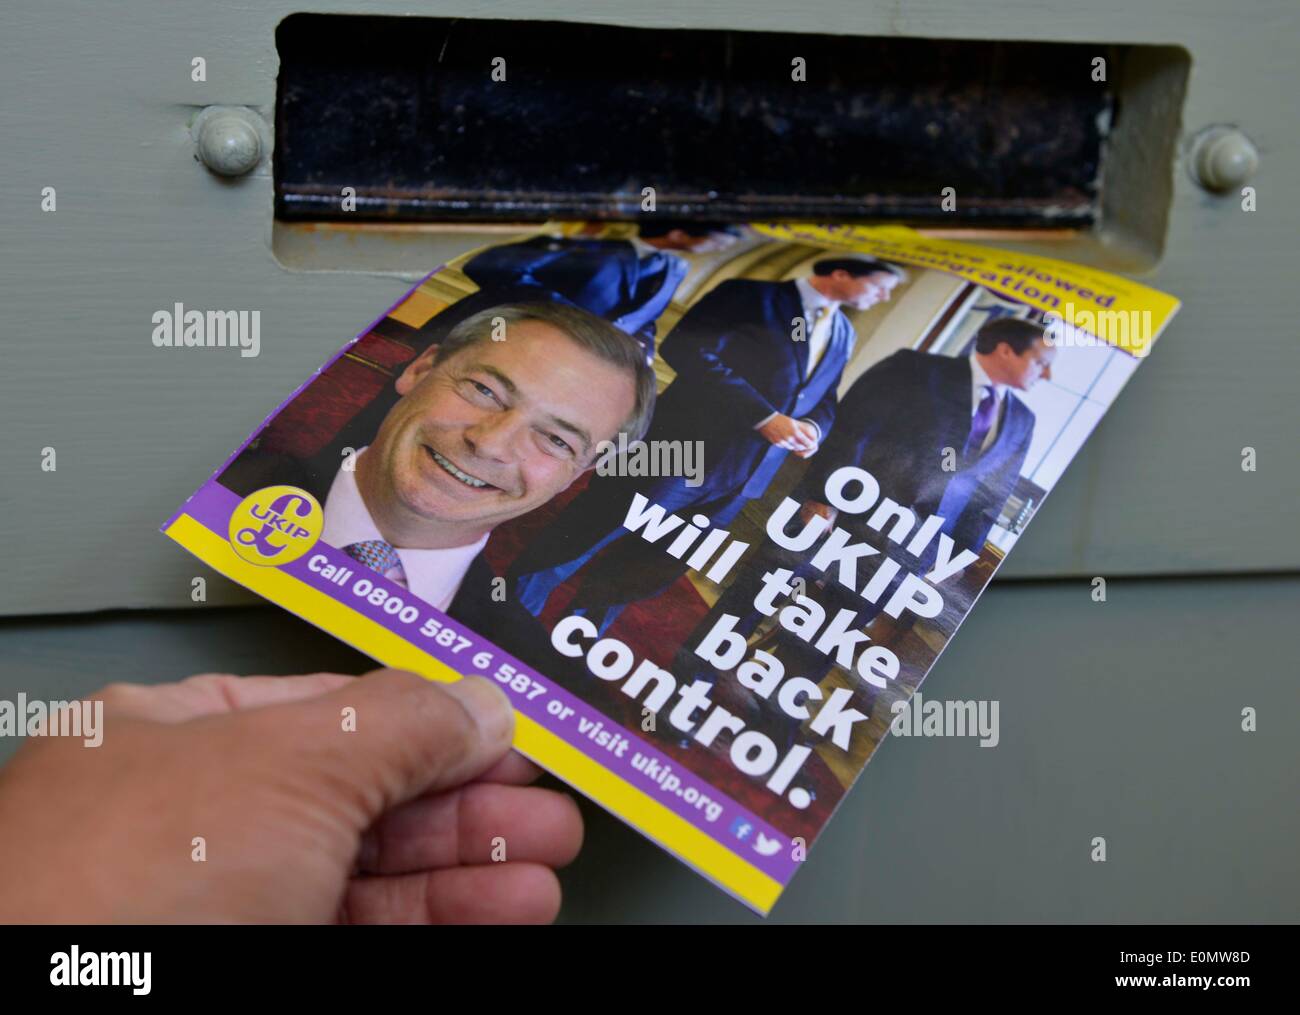 UKIP-Wahl-Broschüre über Briefkasten geliefert Stockfoto